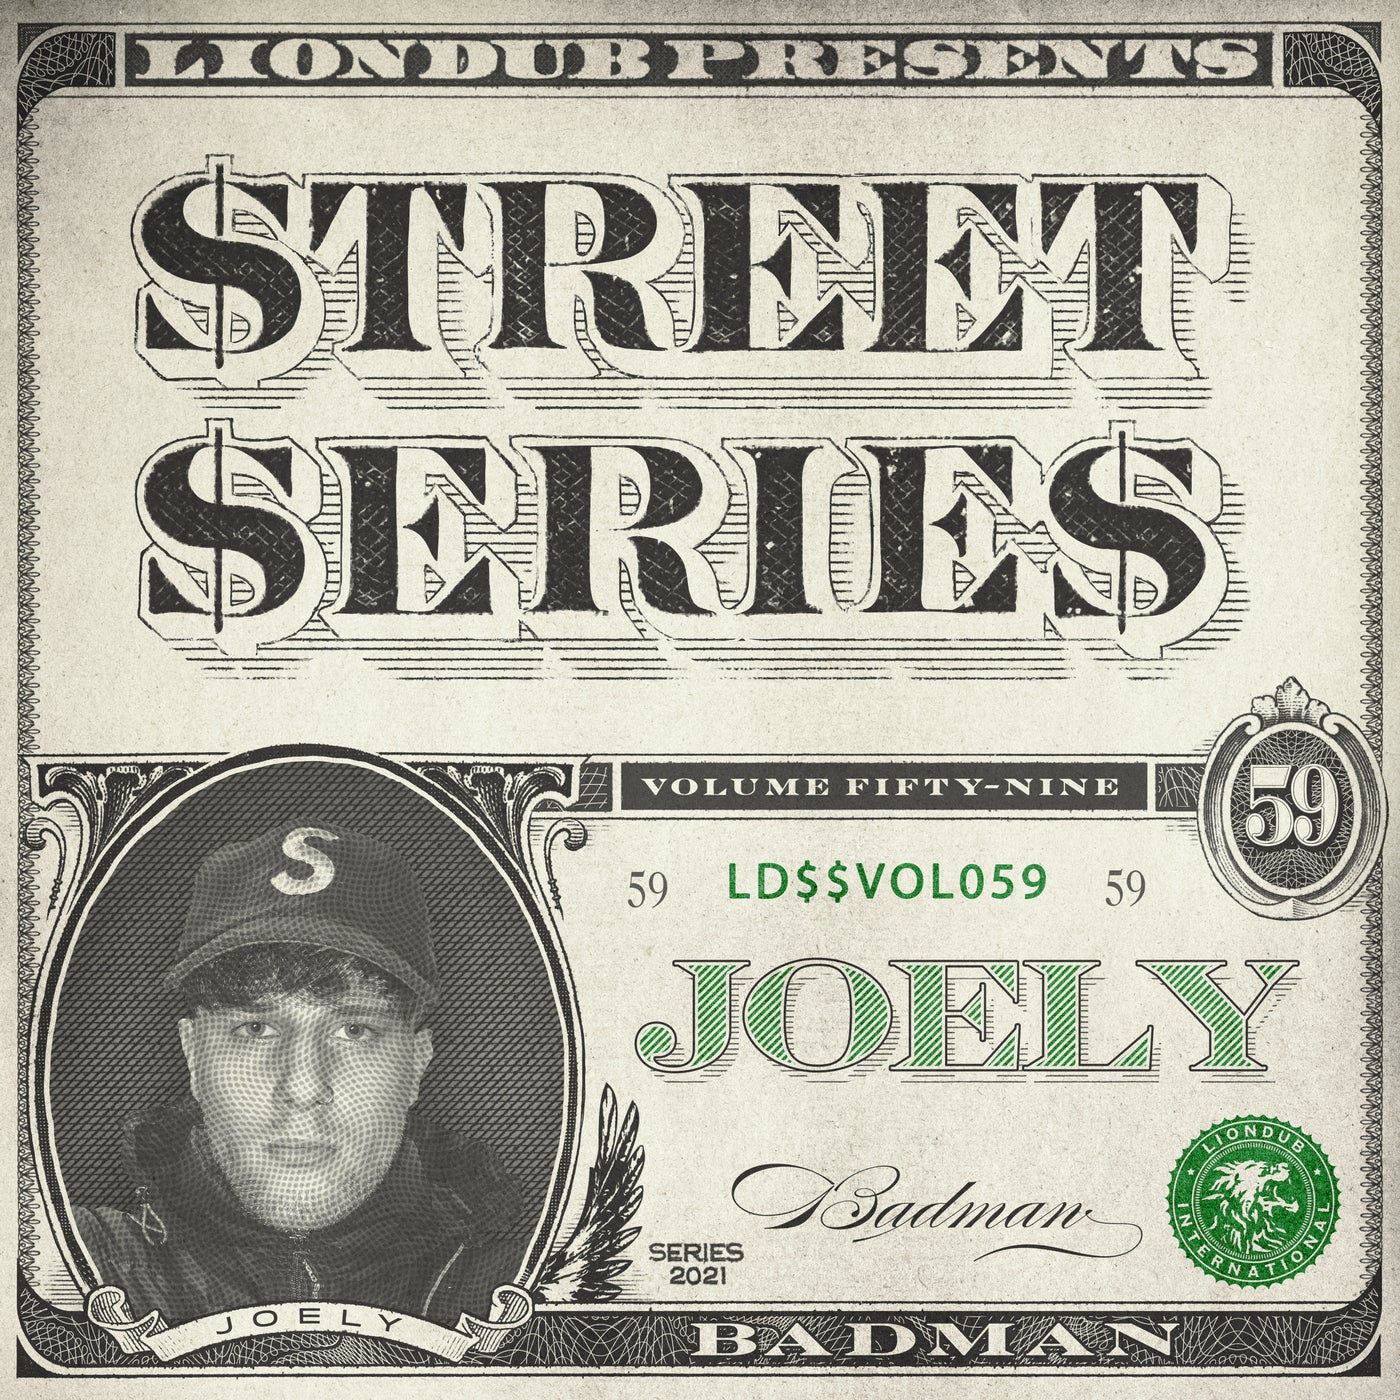 Liondub Street Series, Vol. 59: Badman